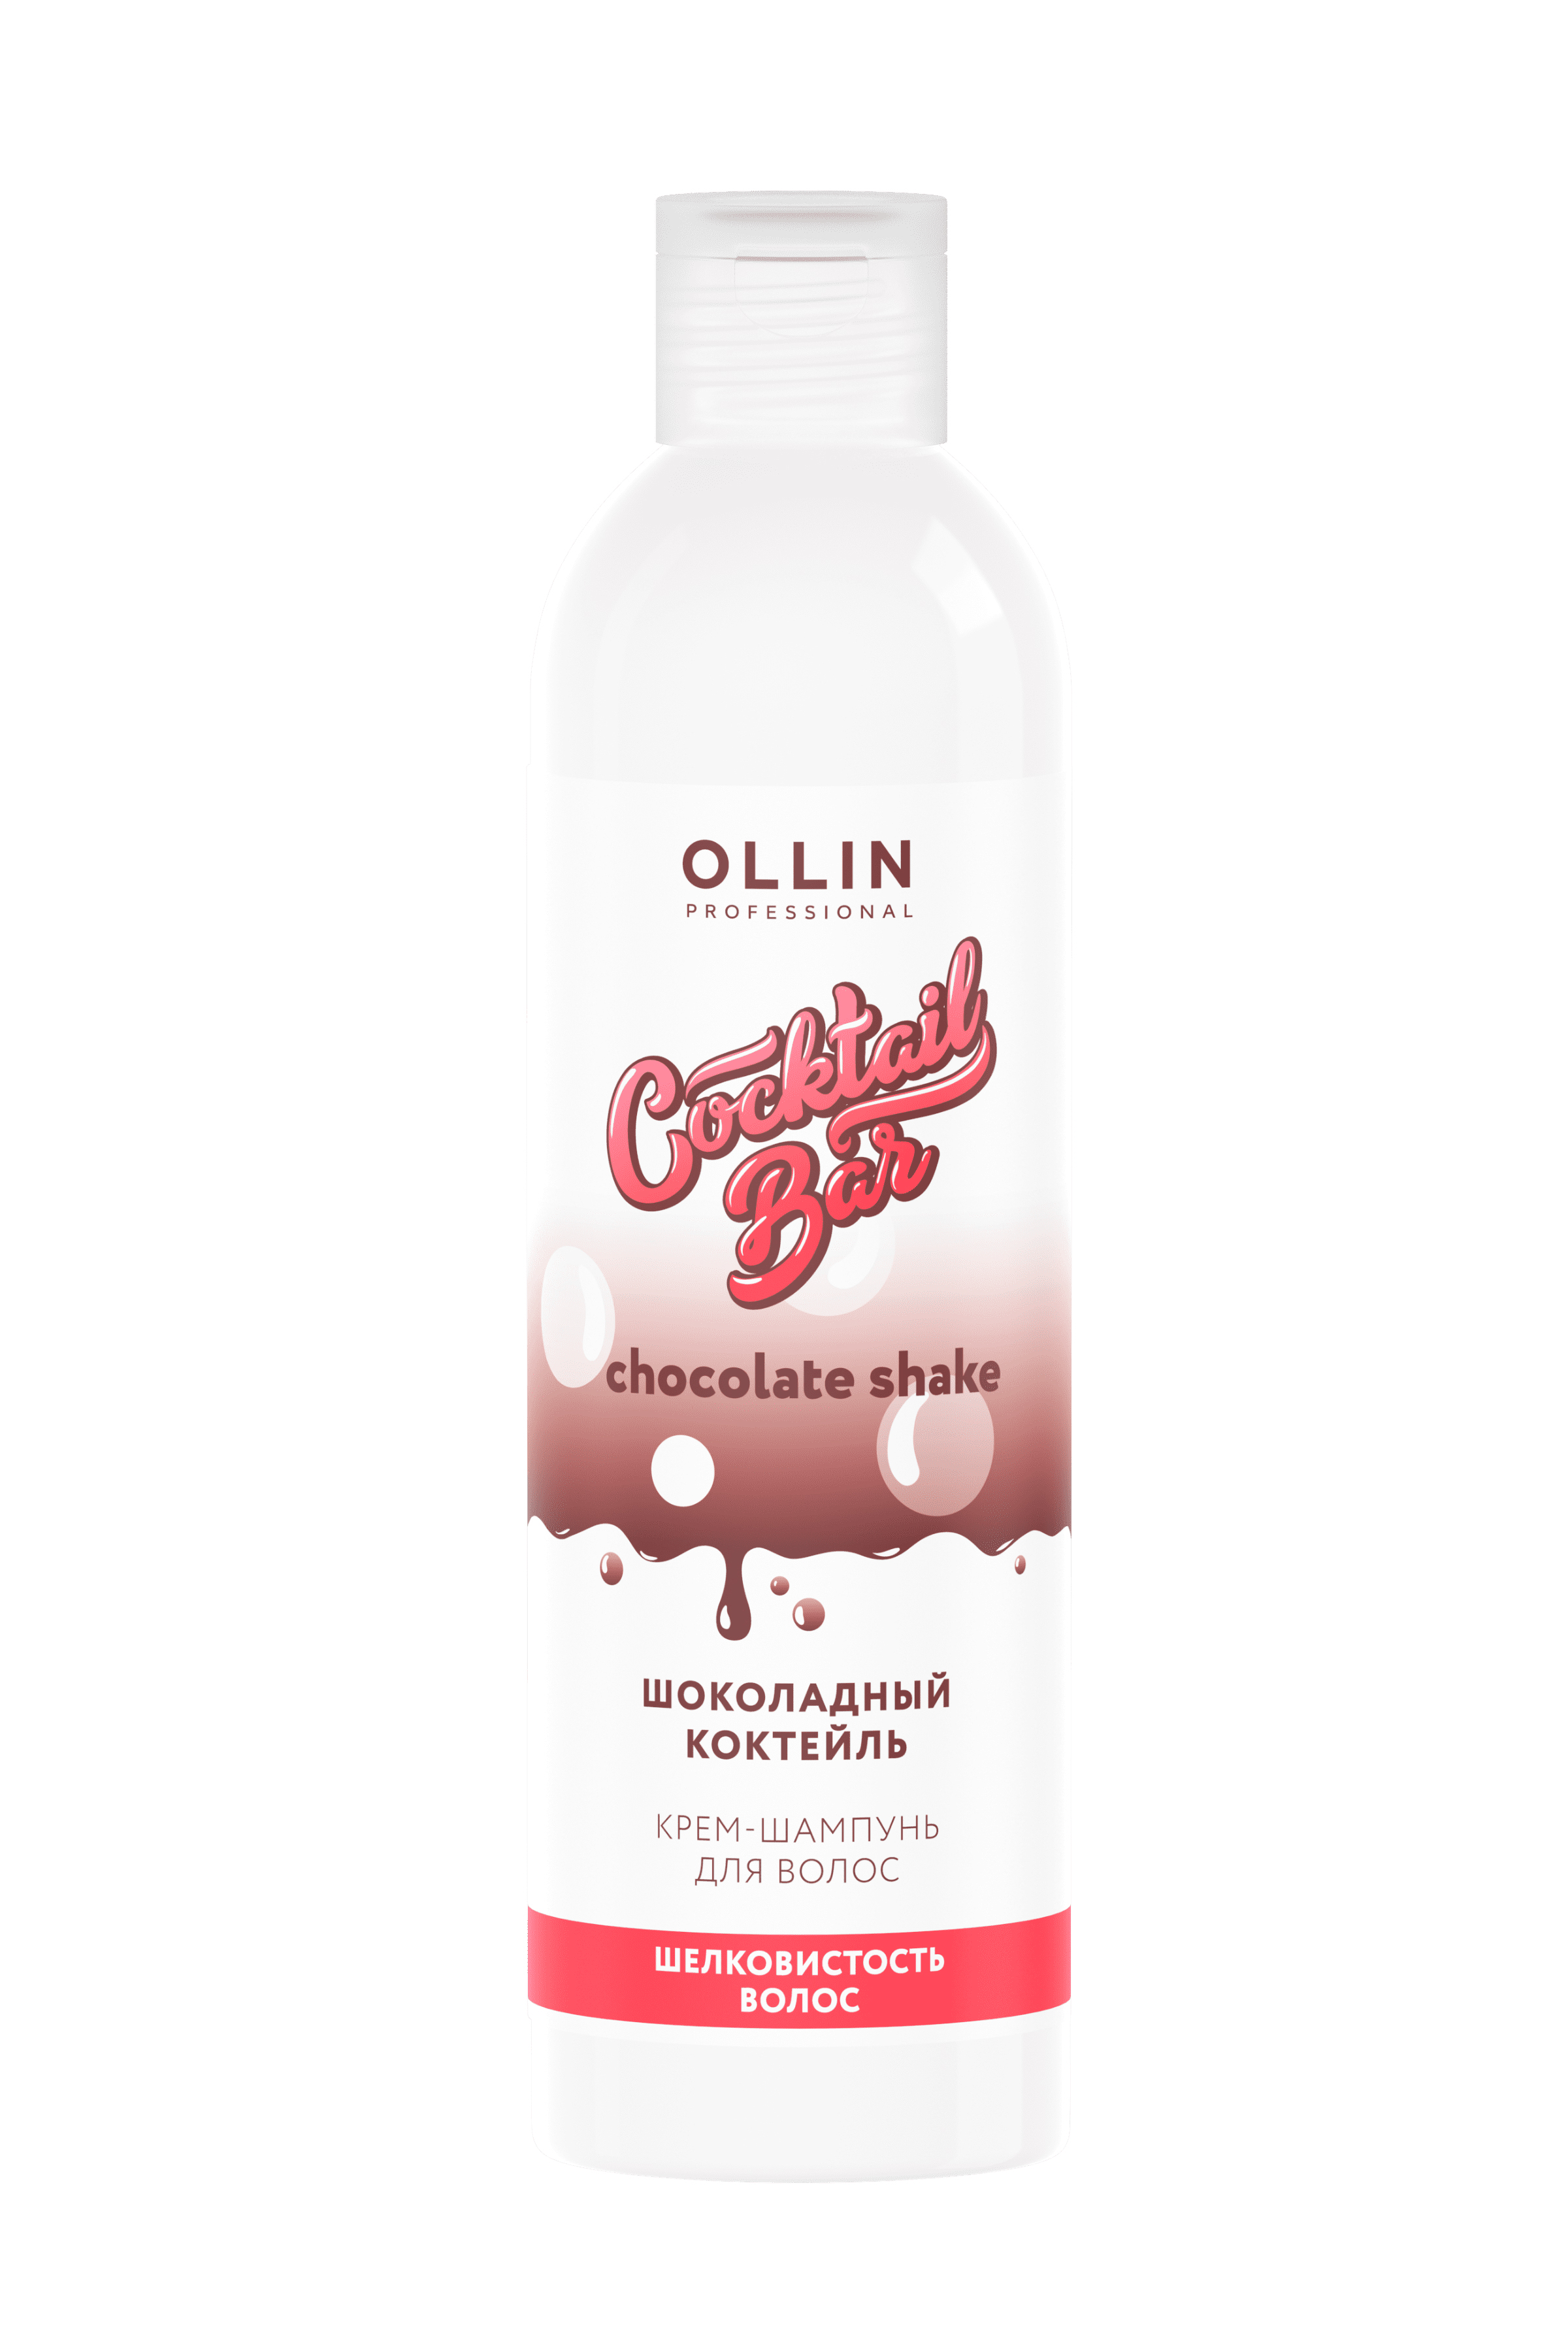 OLLIN Cocktail BAR Крем-шампунь "Шоколадный коктейль" объем и шелковистость волос 400мл